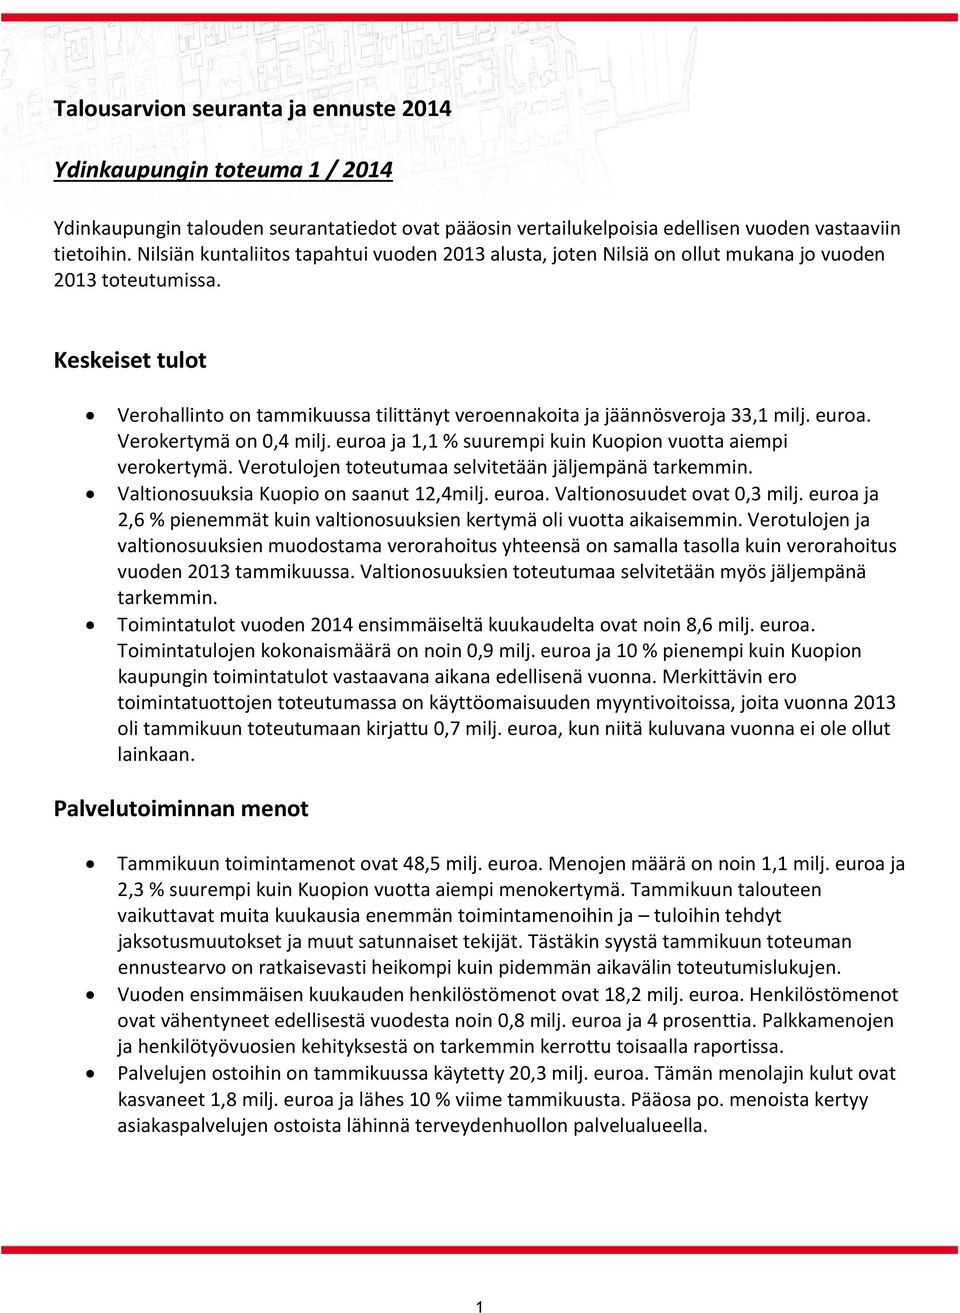 Keskeiset tulot Verohallinto on tammikuussa tilittänyt veroennakoita ja jäännösveroja 33,1 milj. euroa. Verokertymä on 0,4 milj. euroa ja 1,1 % suurempi kuin Kuopion vuotta aiempi verokertymä.